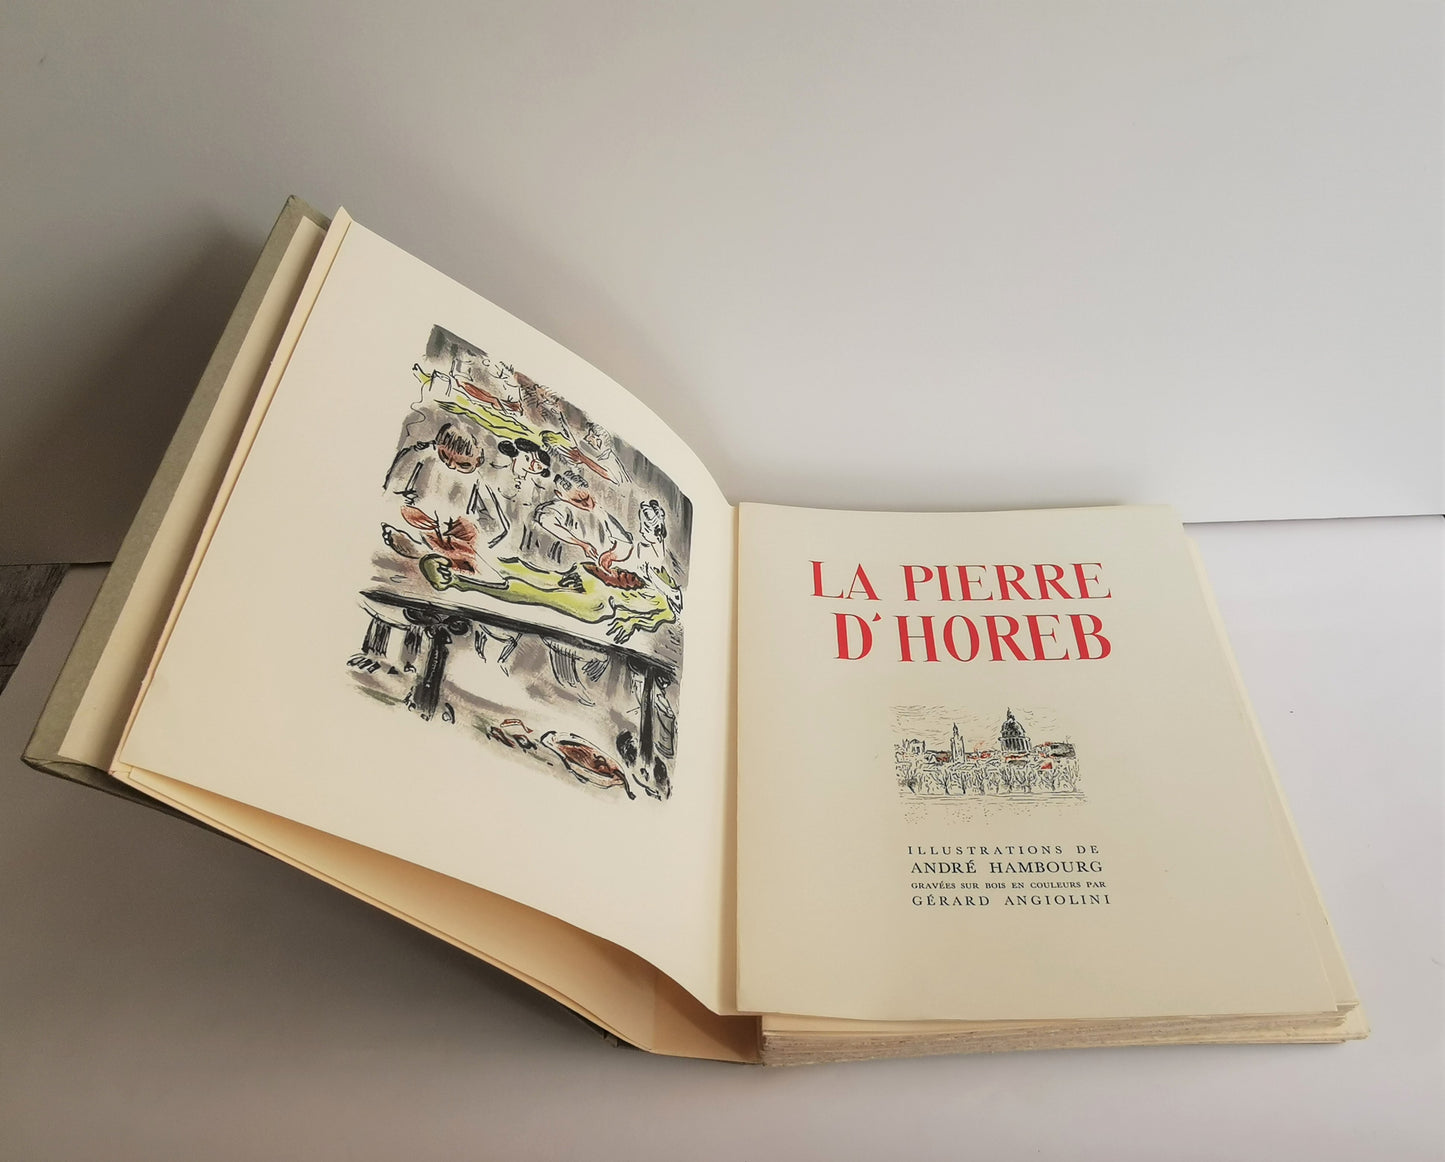 La Pierre d'Horeb, Georges Duhamel, illustrations de André Hambourg gravées sur bois en couleurs par Gérard Angiolini, ed. Albert Guillot, 1953.